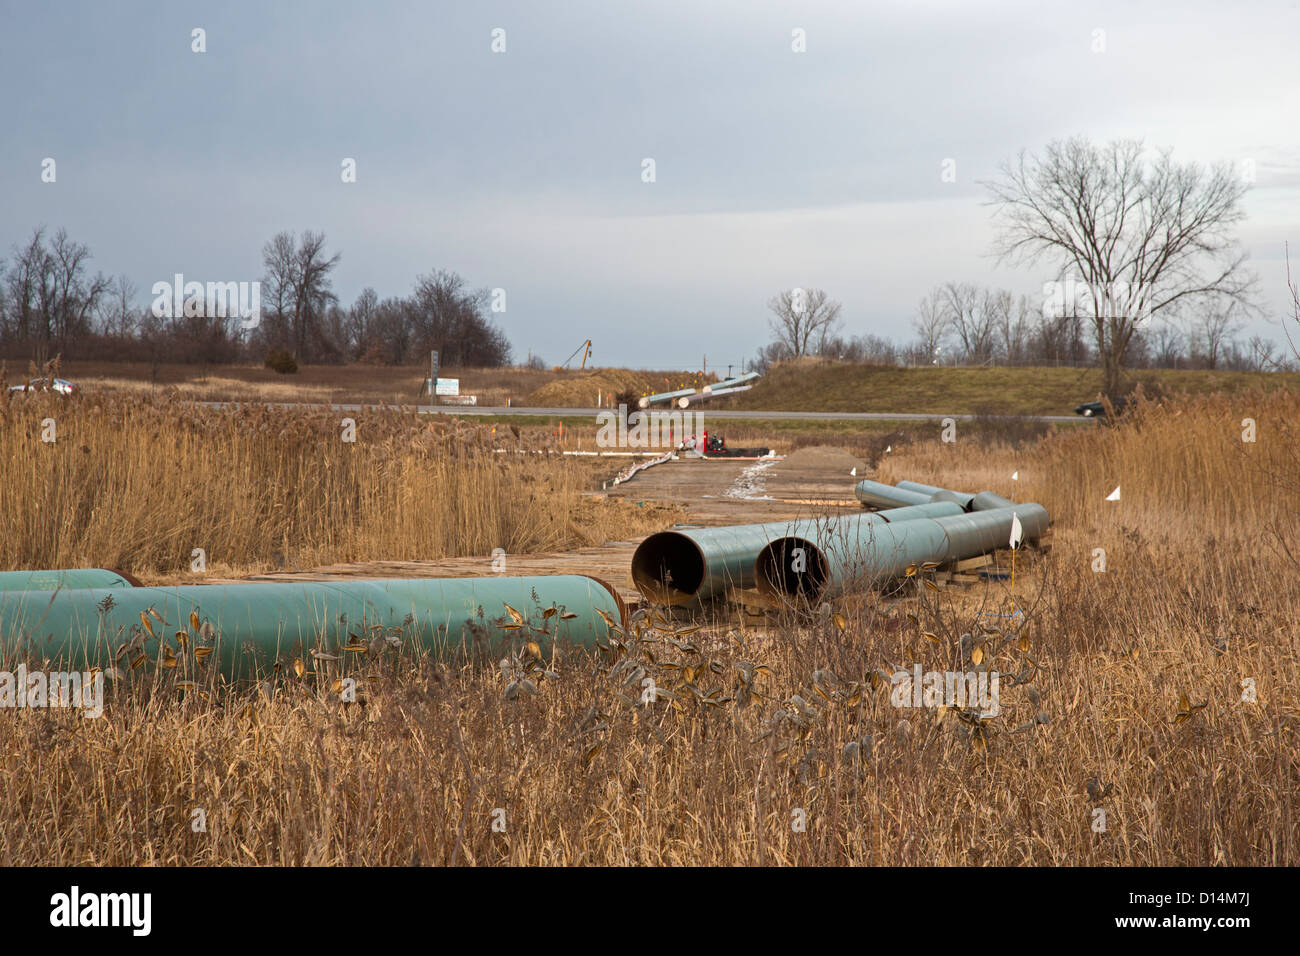 Bau der Ölpipeline Linie zu ersetzen, die Sande Öl in den Kalamazoo-Fluss im Jahr 2010 verschüttet. Stockfoto